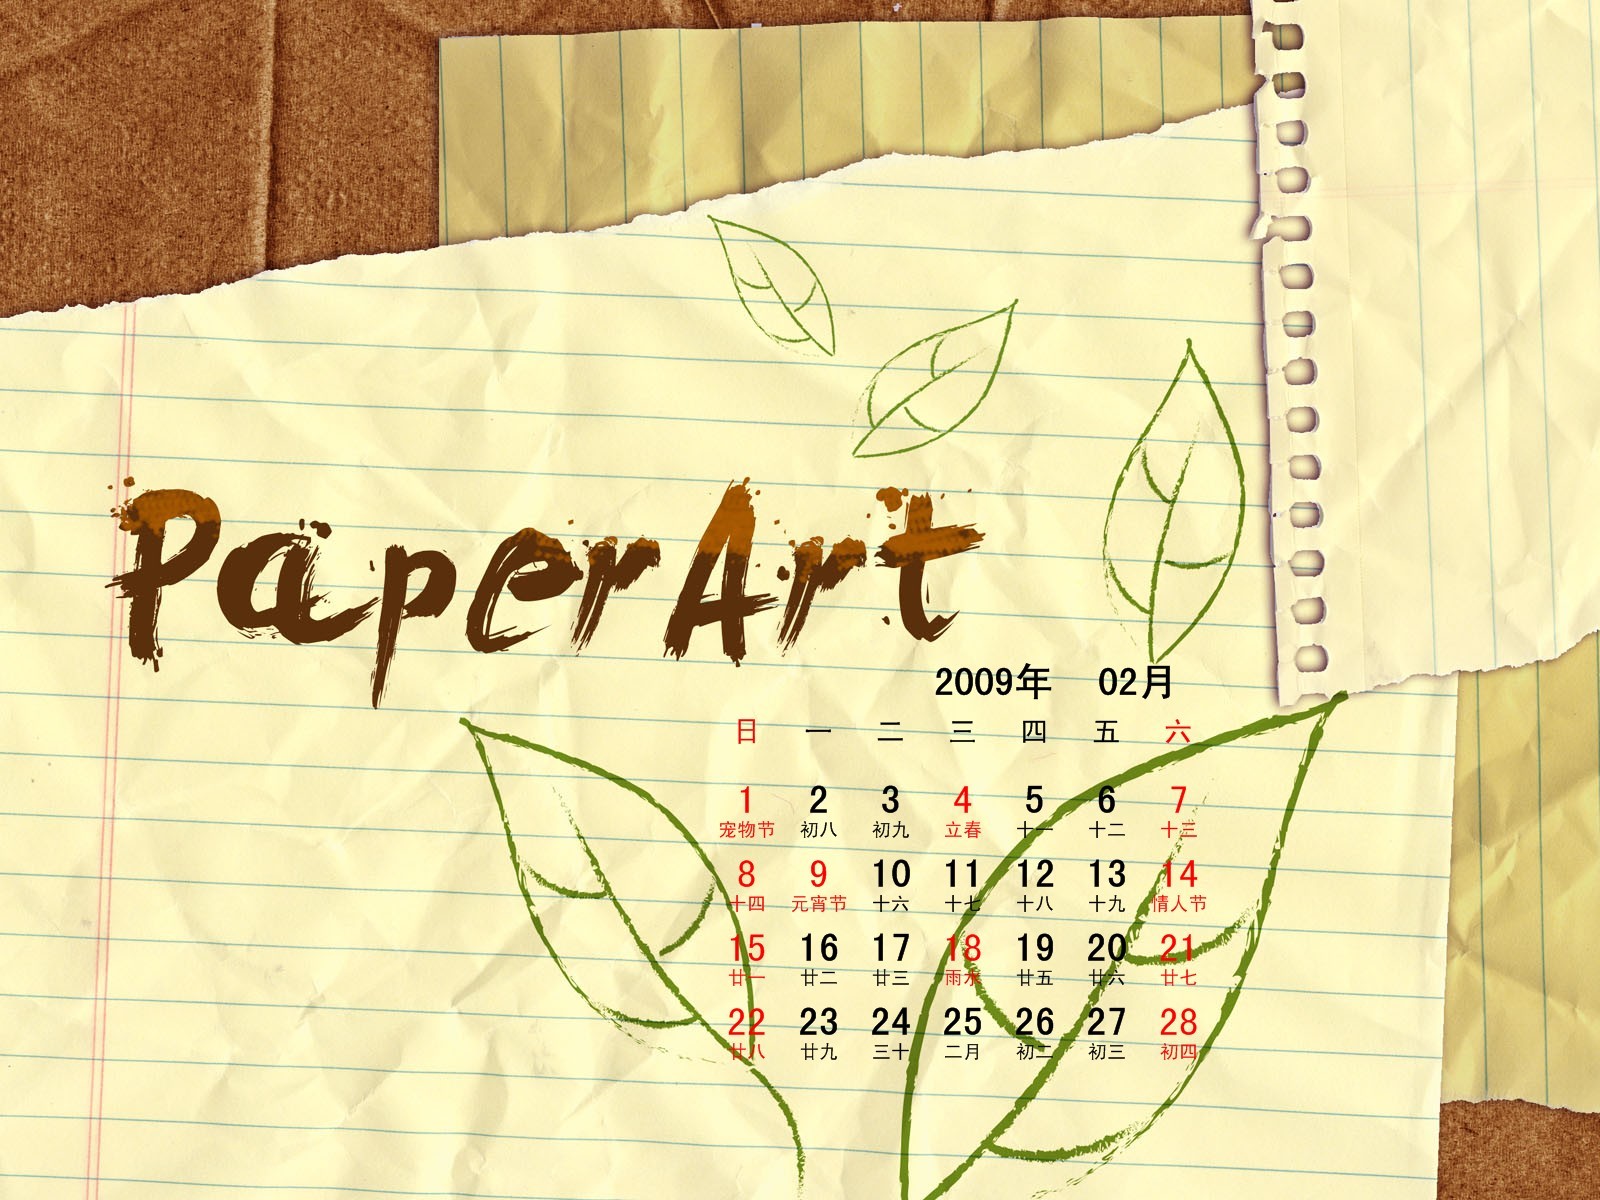 PaperArt 09 roků v kalendáři wallpaper února #27 - 1600x1200